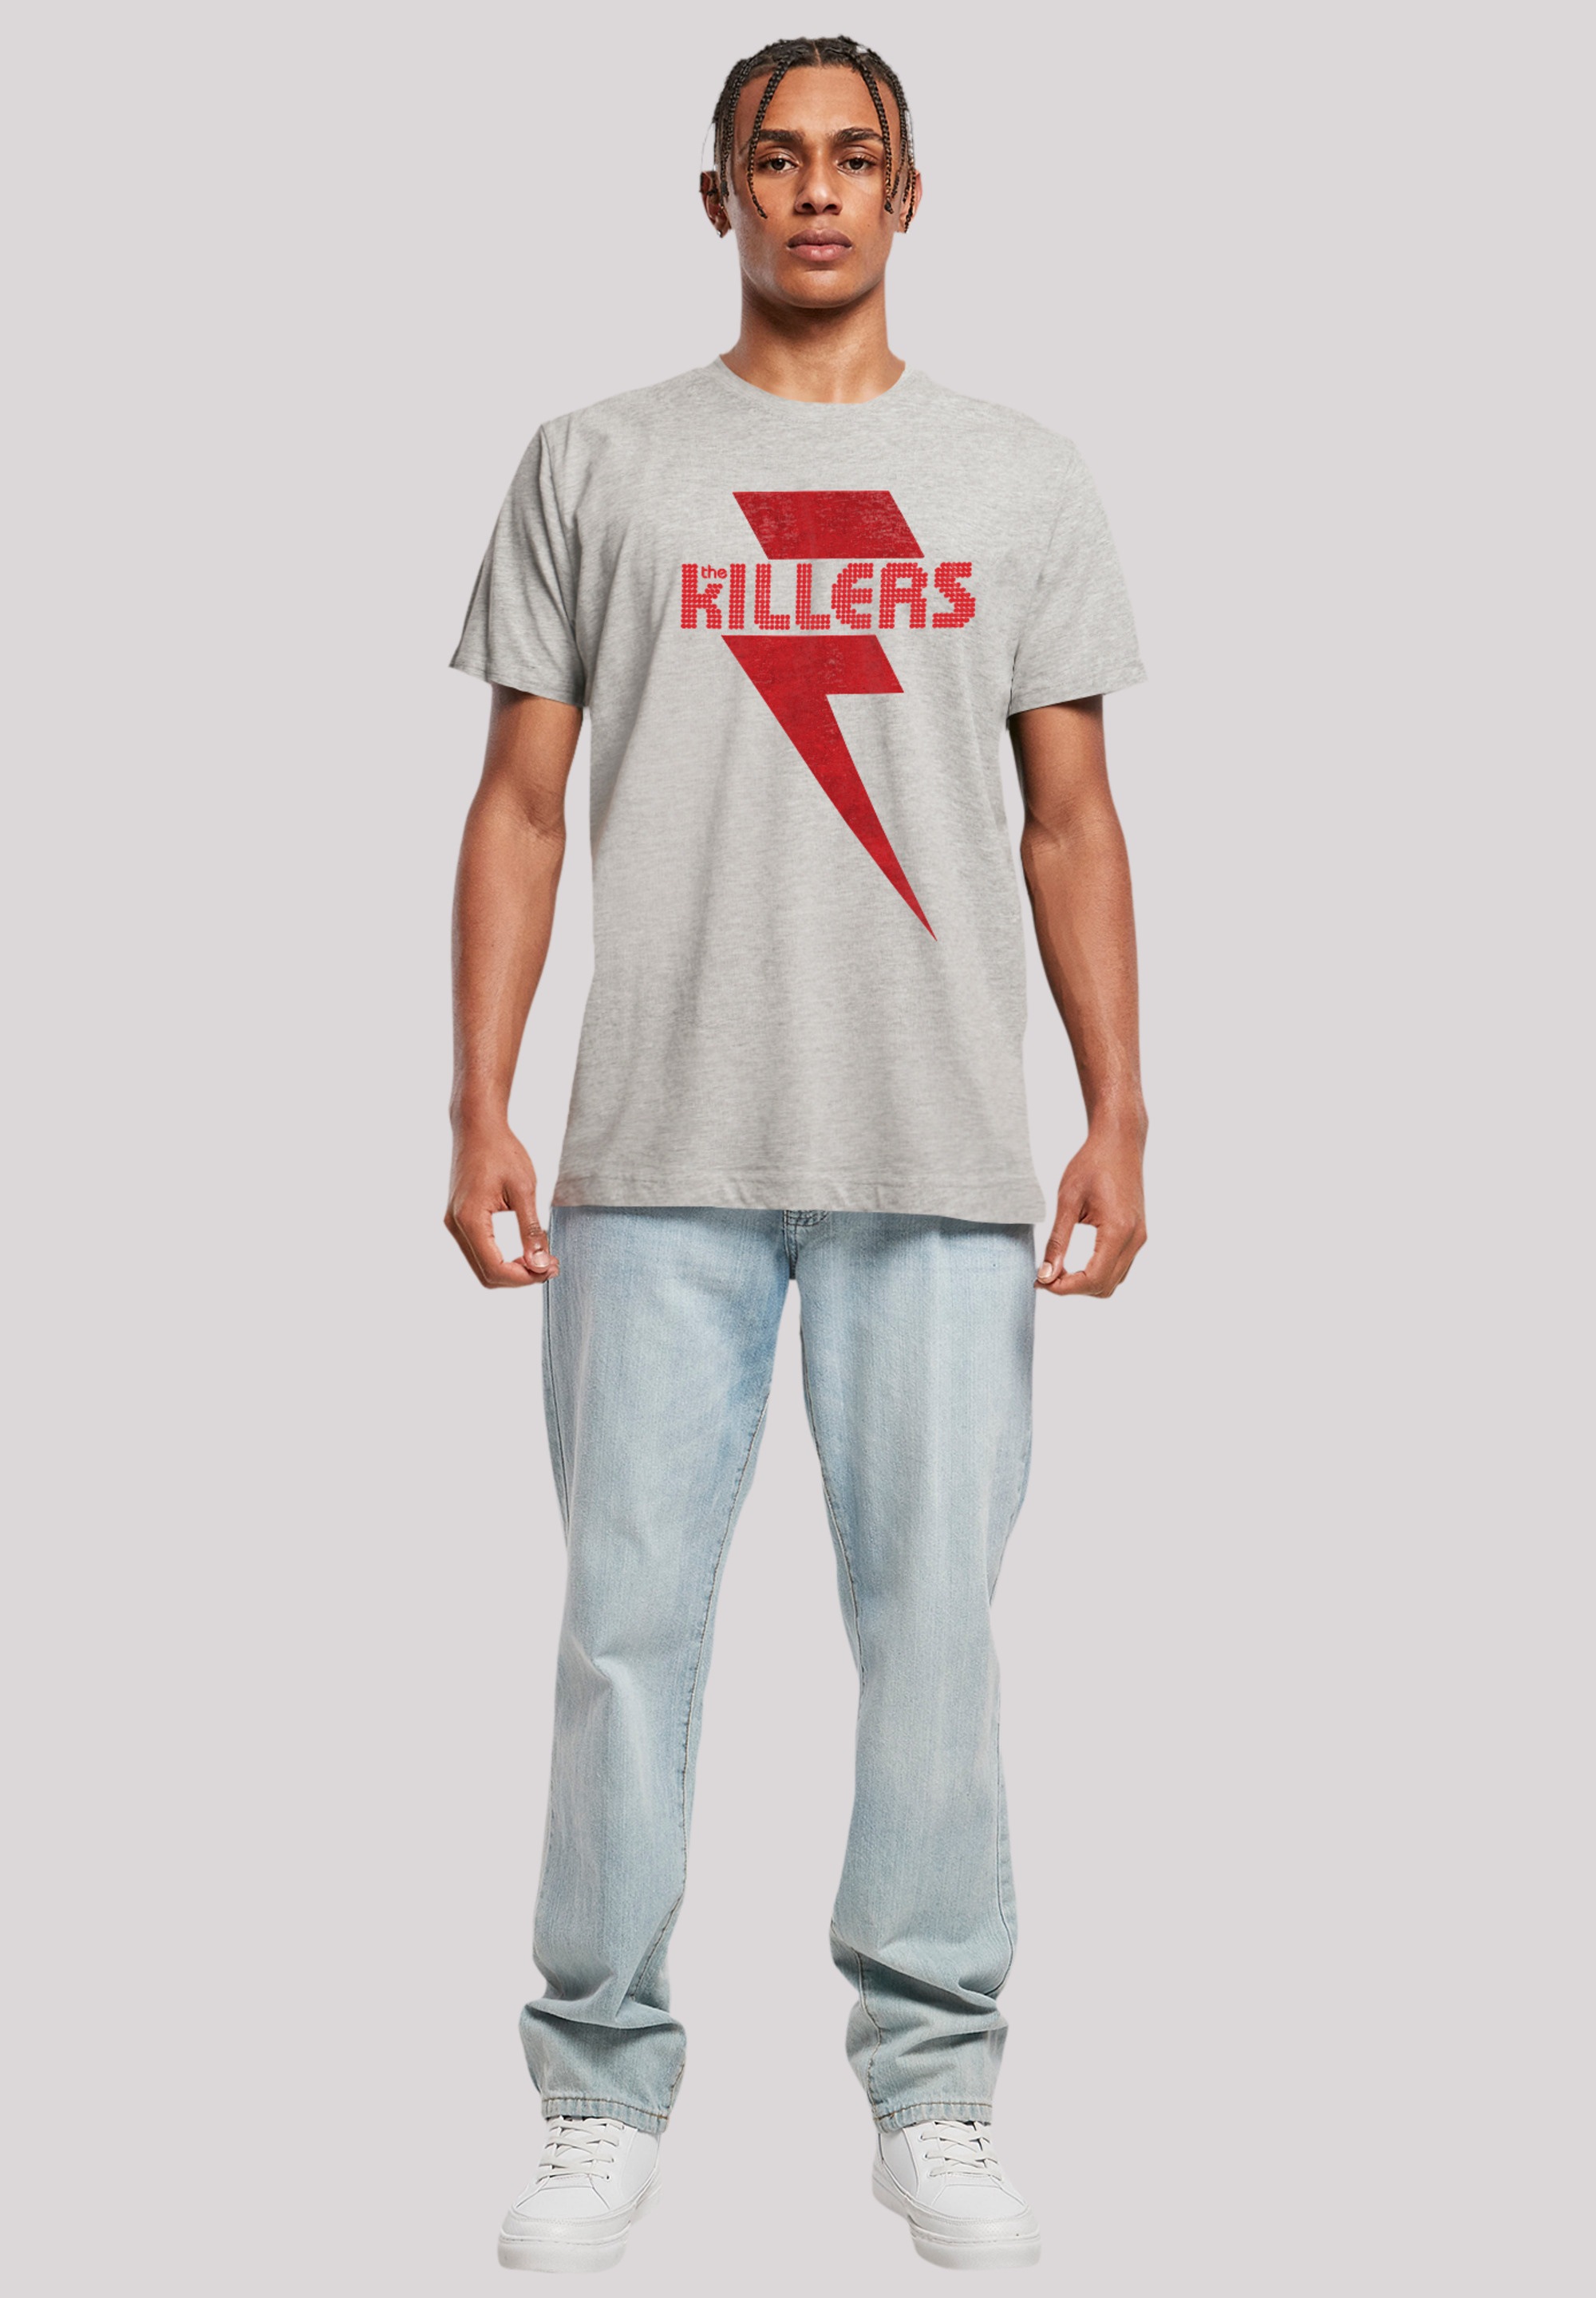 F4NT4STIC ▷ BAUR Print Bolt«, »The Killers für Red T-Shirt |